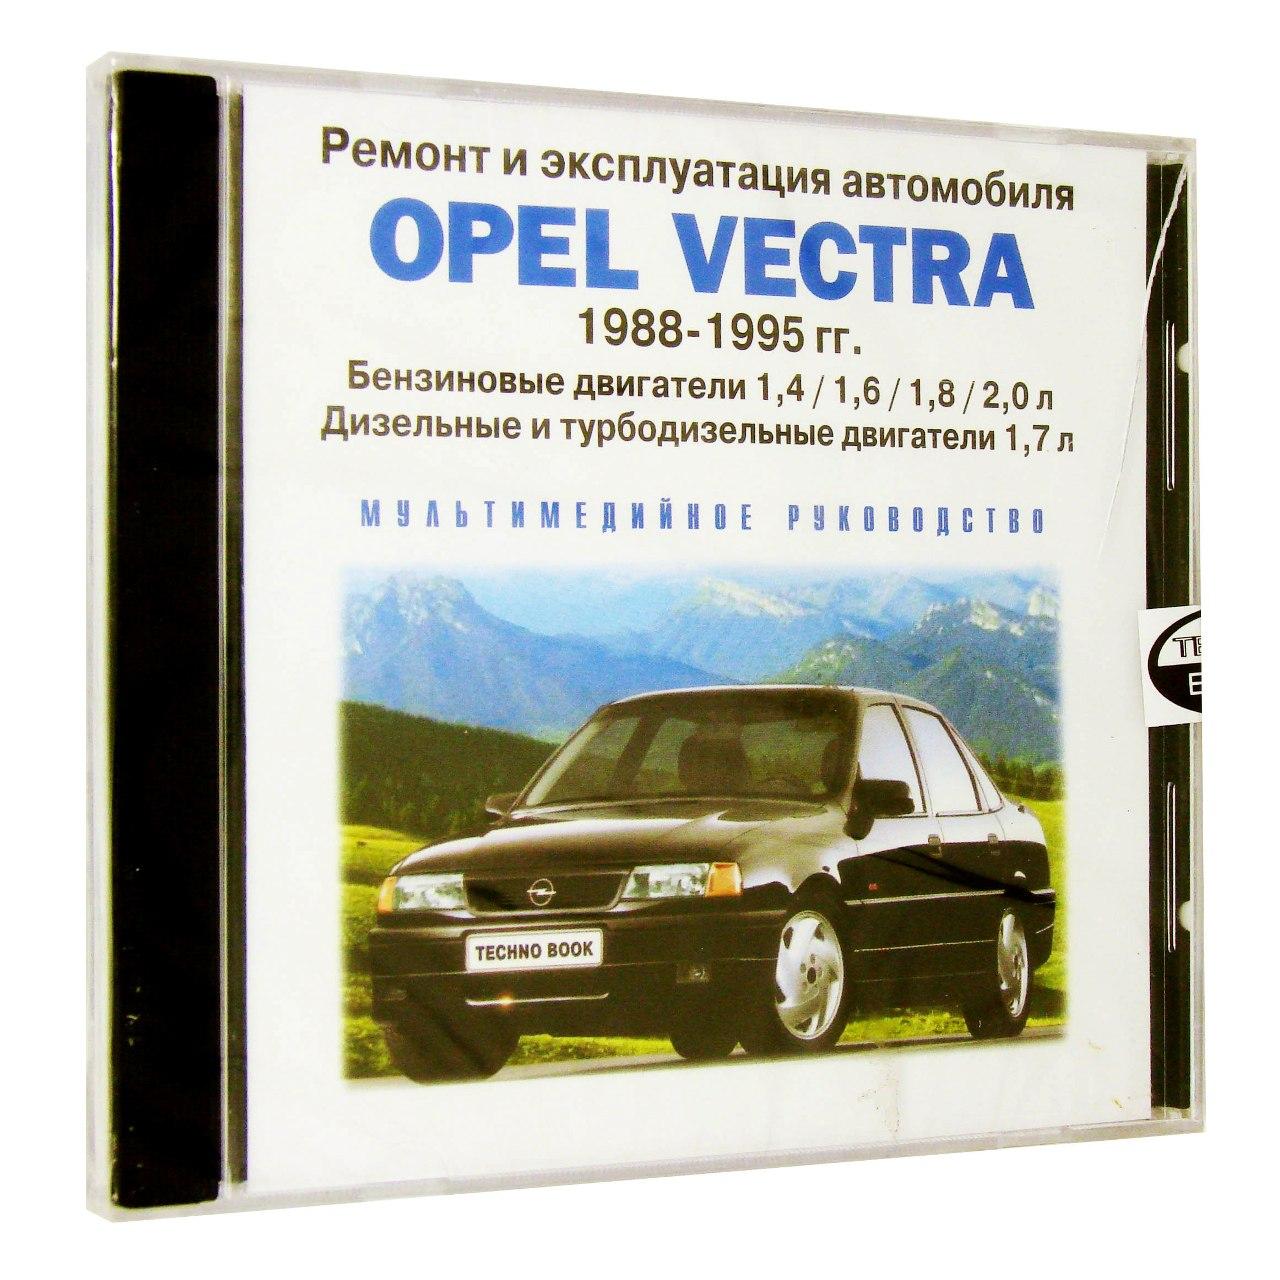 Компьютерный компакт-диск Opel Vectra 1988-1995 гг..: ремонт и эксплуатация автомобиля (ПК), фирма "RMG Multimedia", 1CD